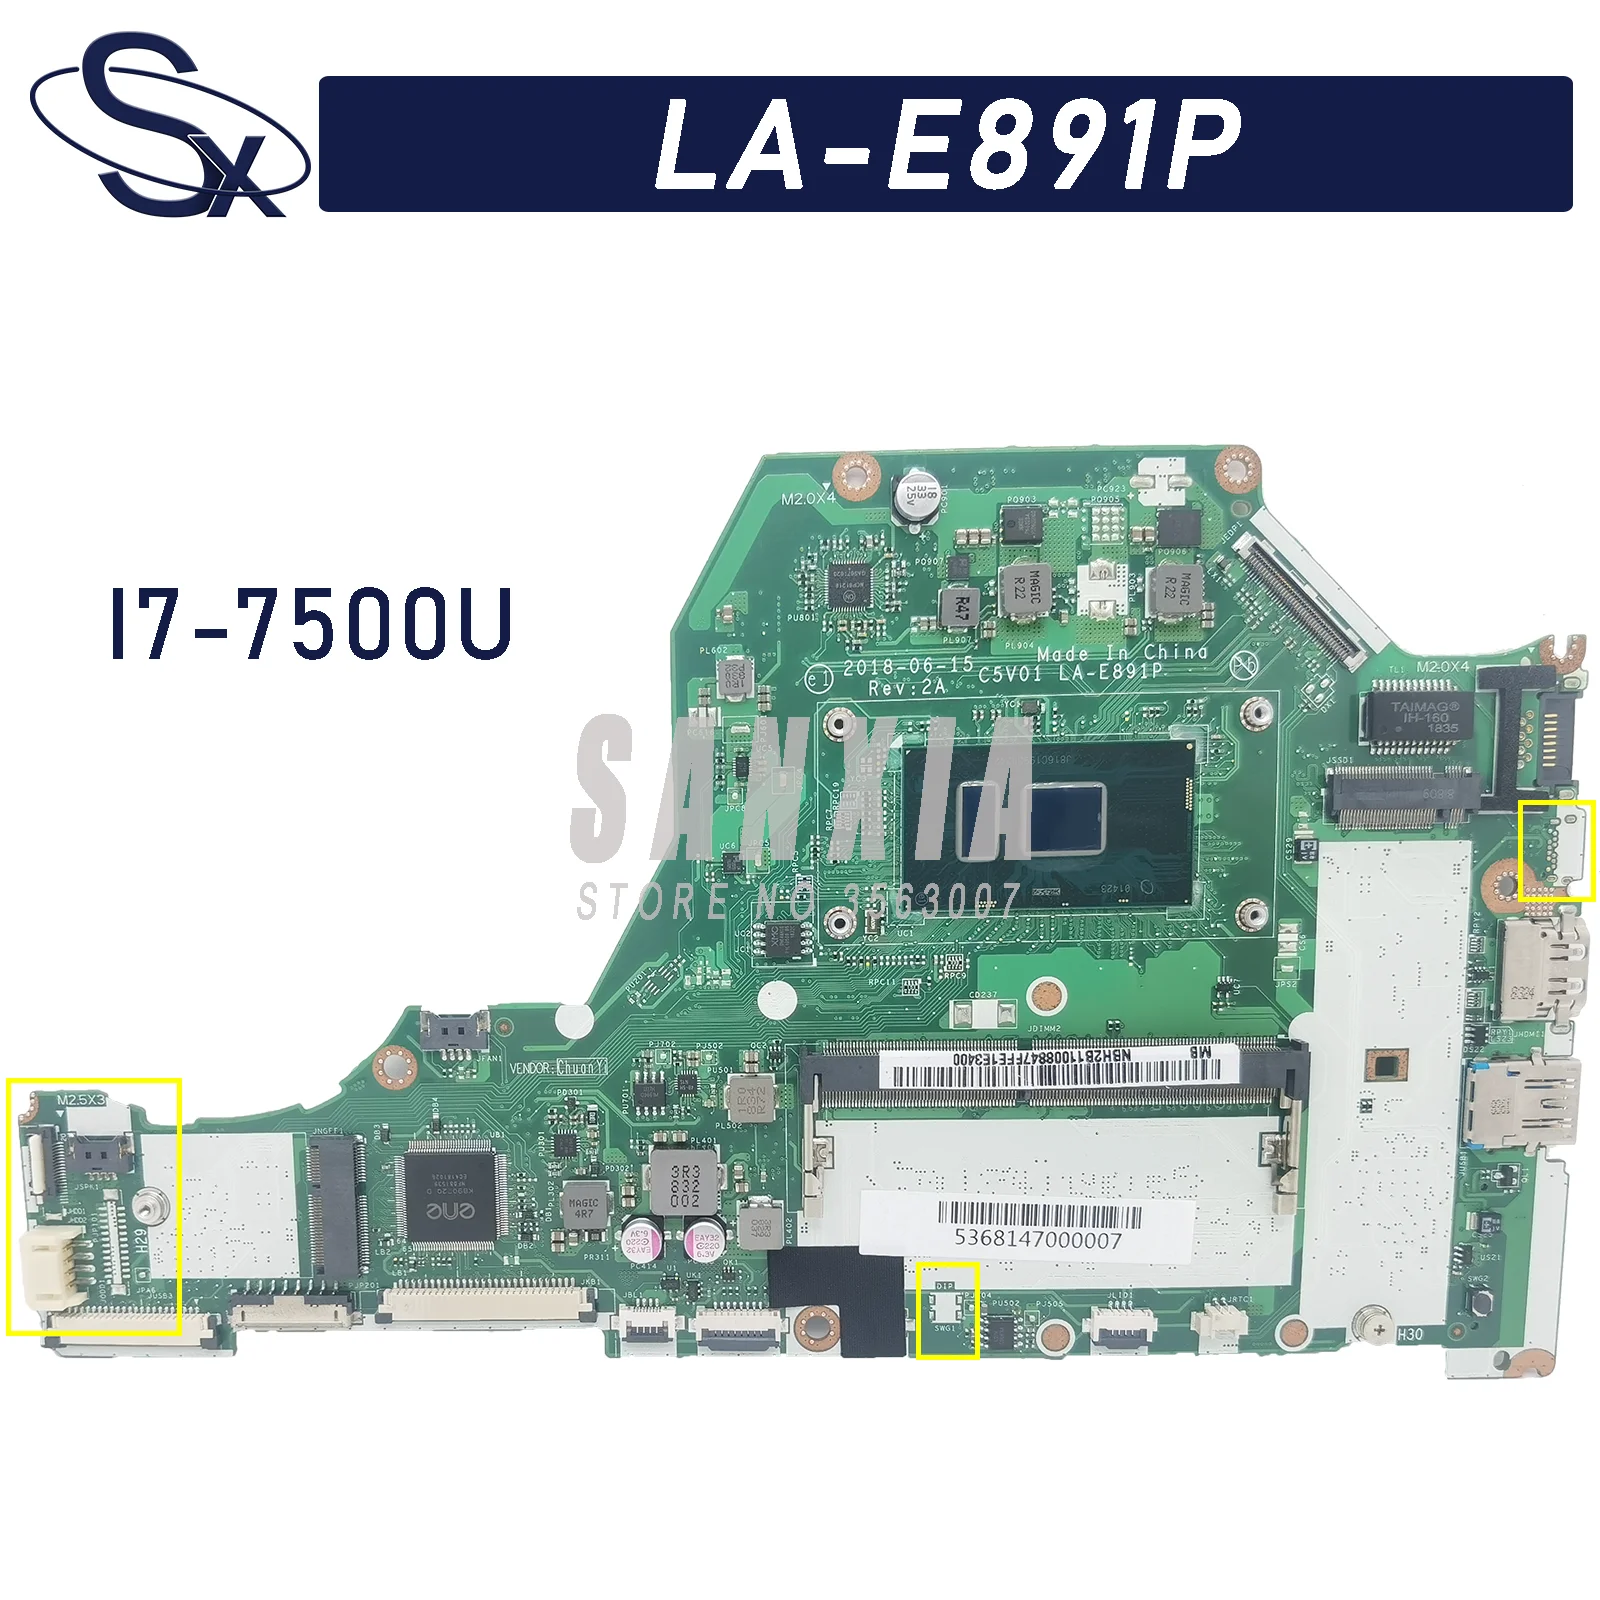 

C5V01 LA-E891P is suitable for Acer Aspire A615-51G A515-51G A315-51G A517-51G laptop motherboard I7-7500U (GM) 100% test OK